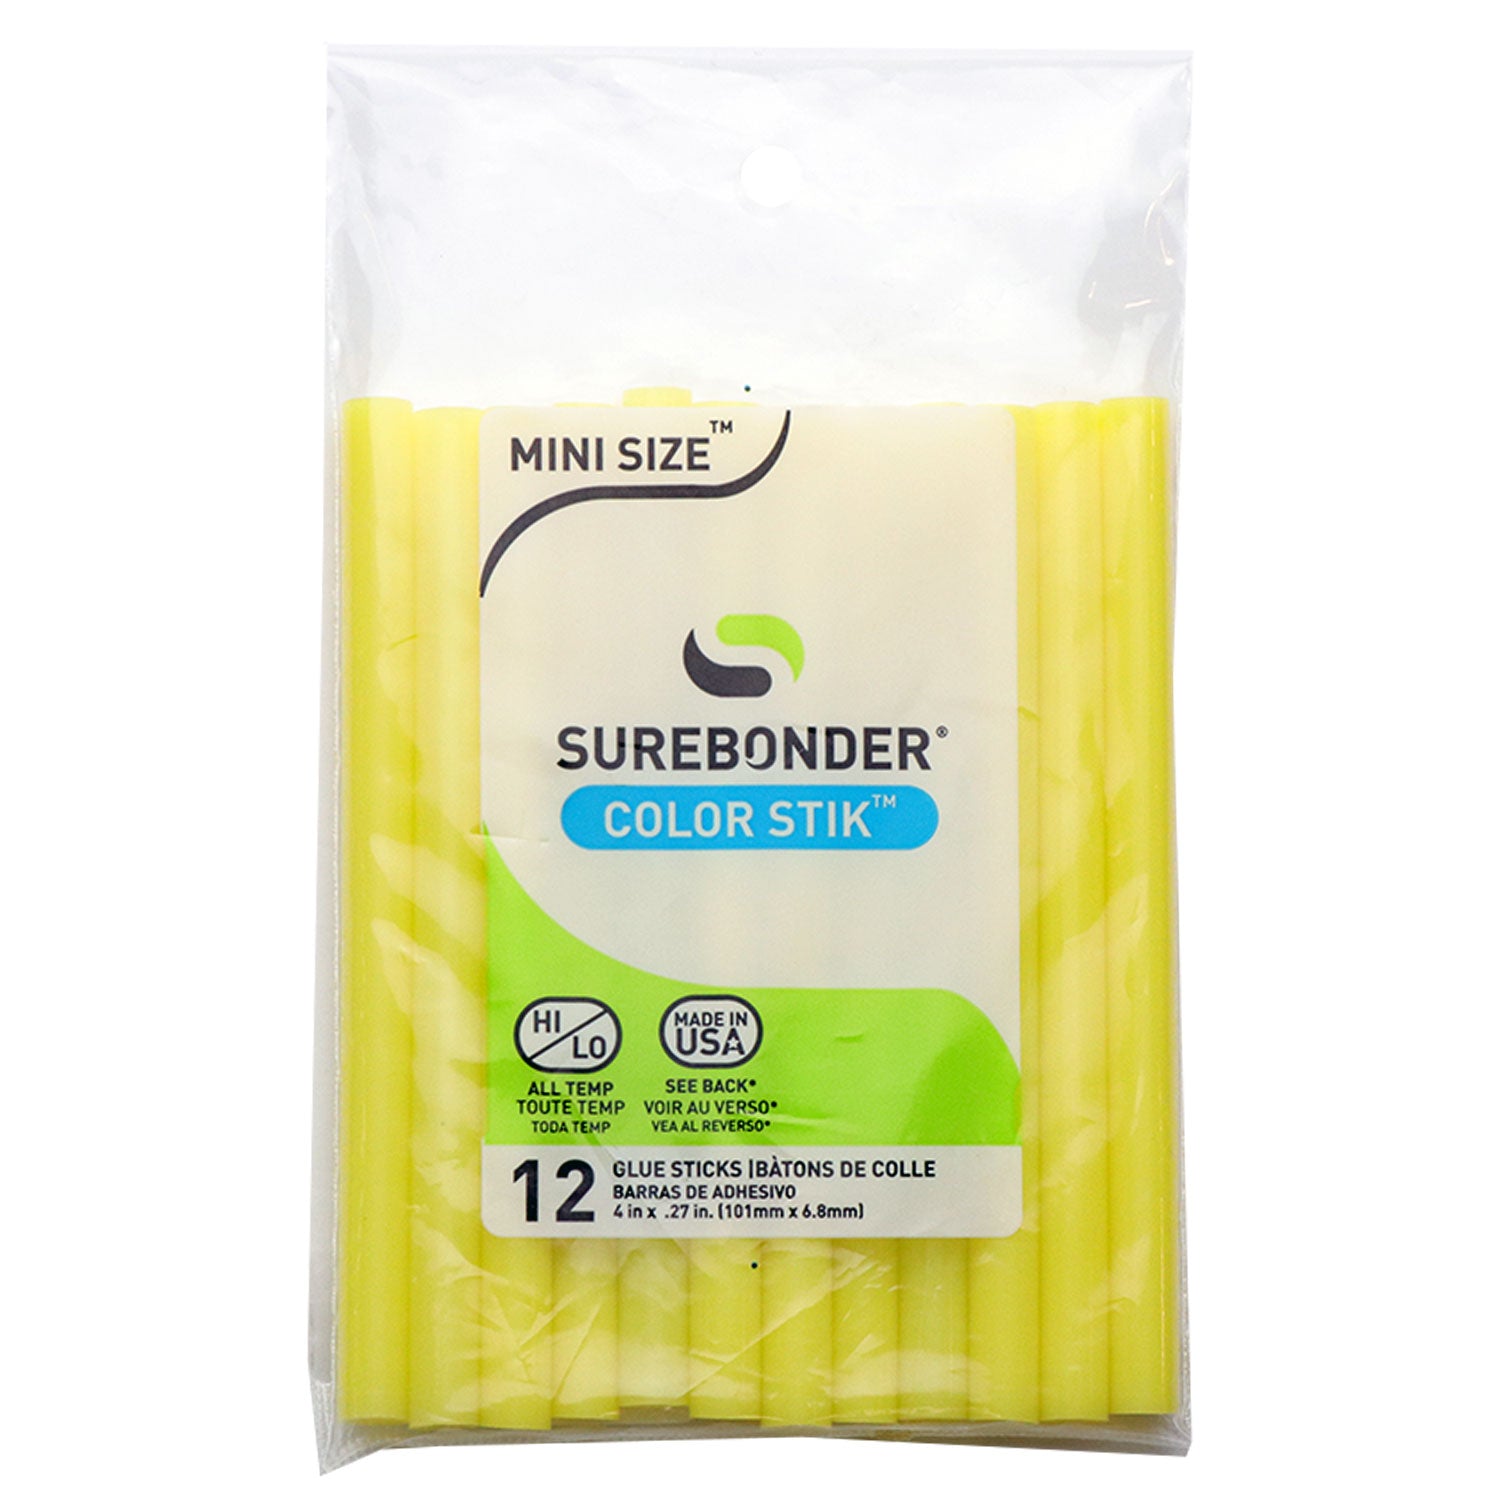 Surebonder All Purpose Clear 4-inch Full Size Hot Glue Sticks - 30 Pack